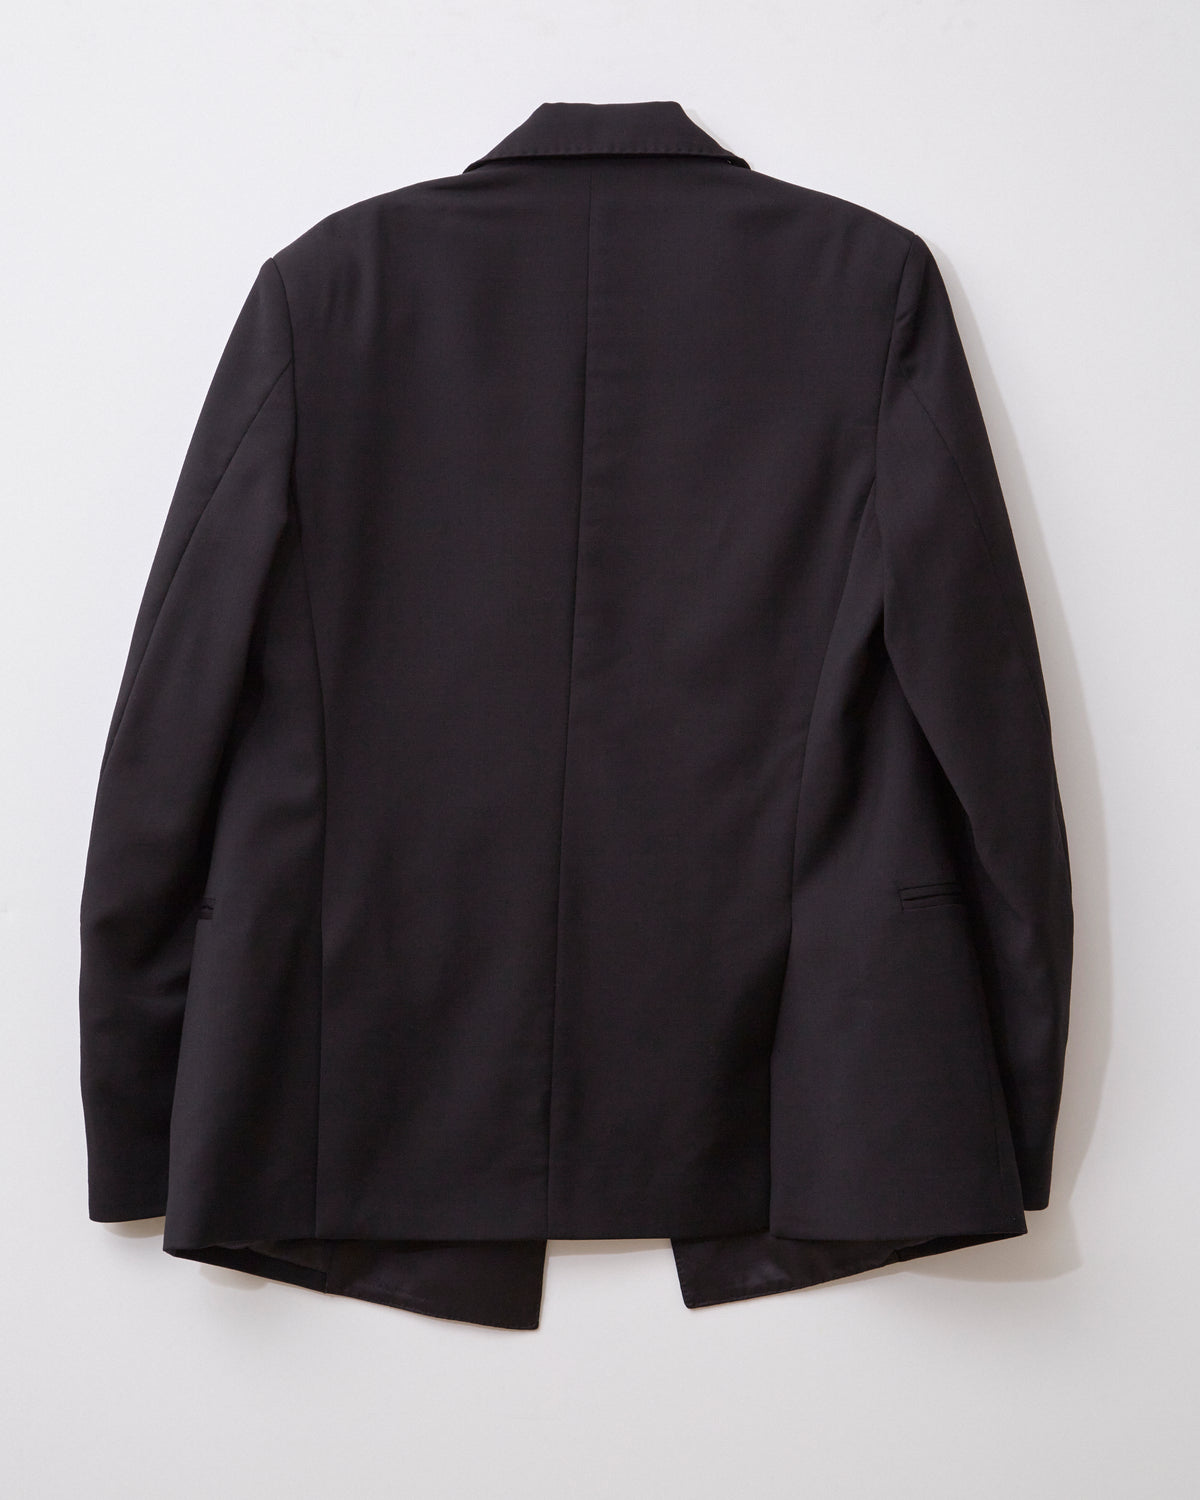 Black Tuxedo Jacket